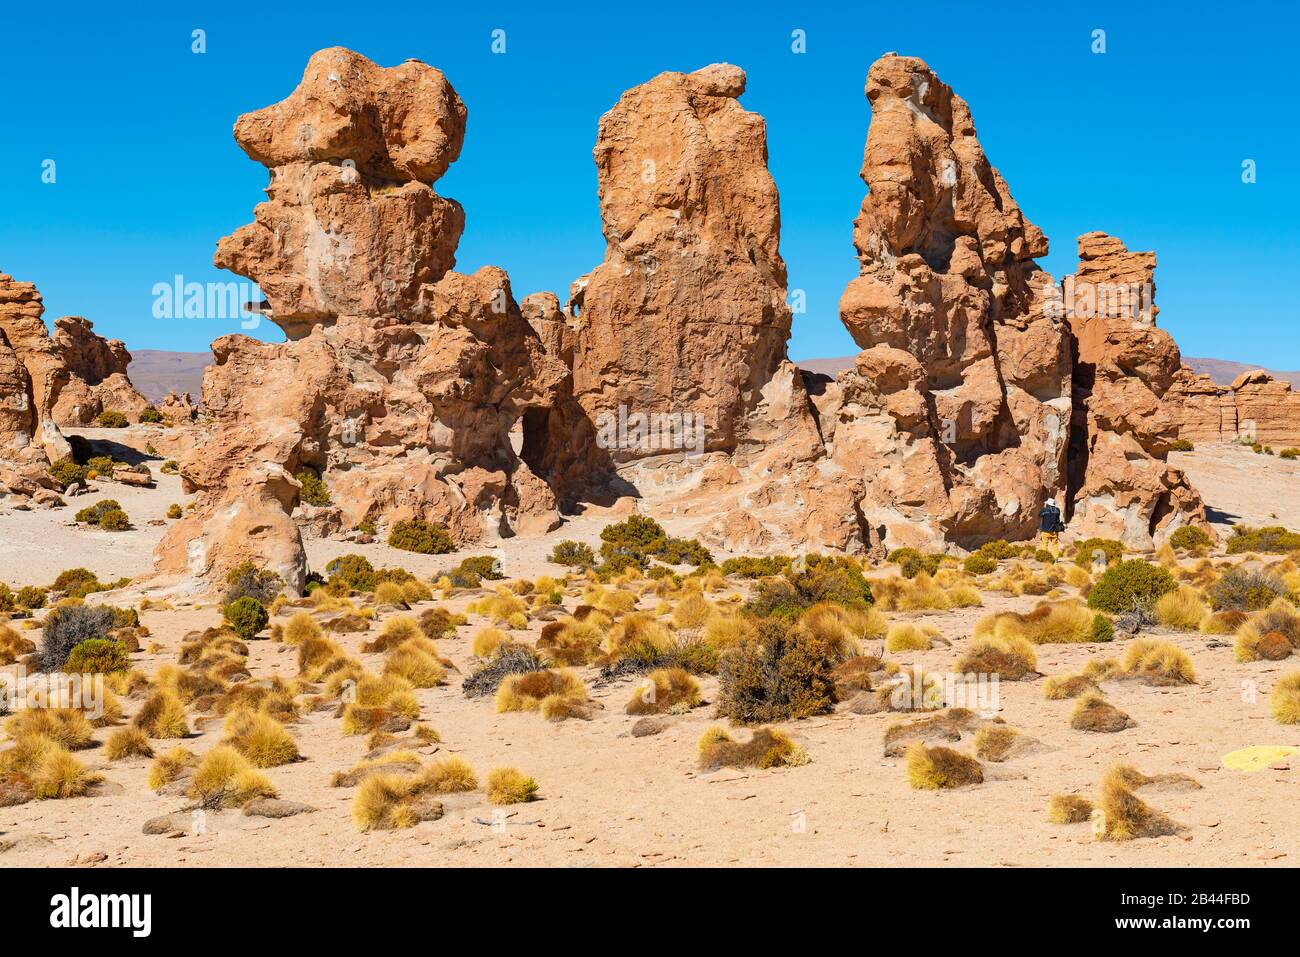 Valle de Rocas ou Stone Valley dans la région plate de sel d'Uyuni, Bolivie. Banque D'Images